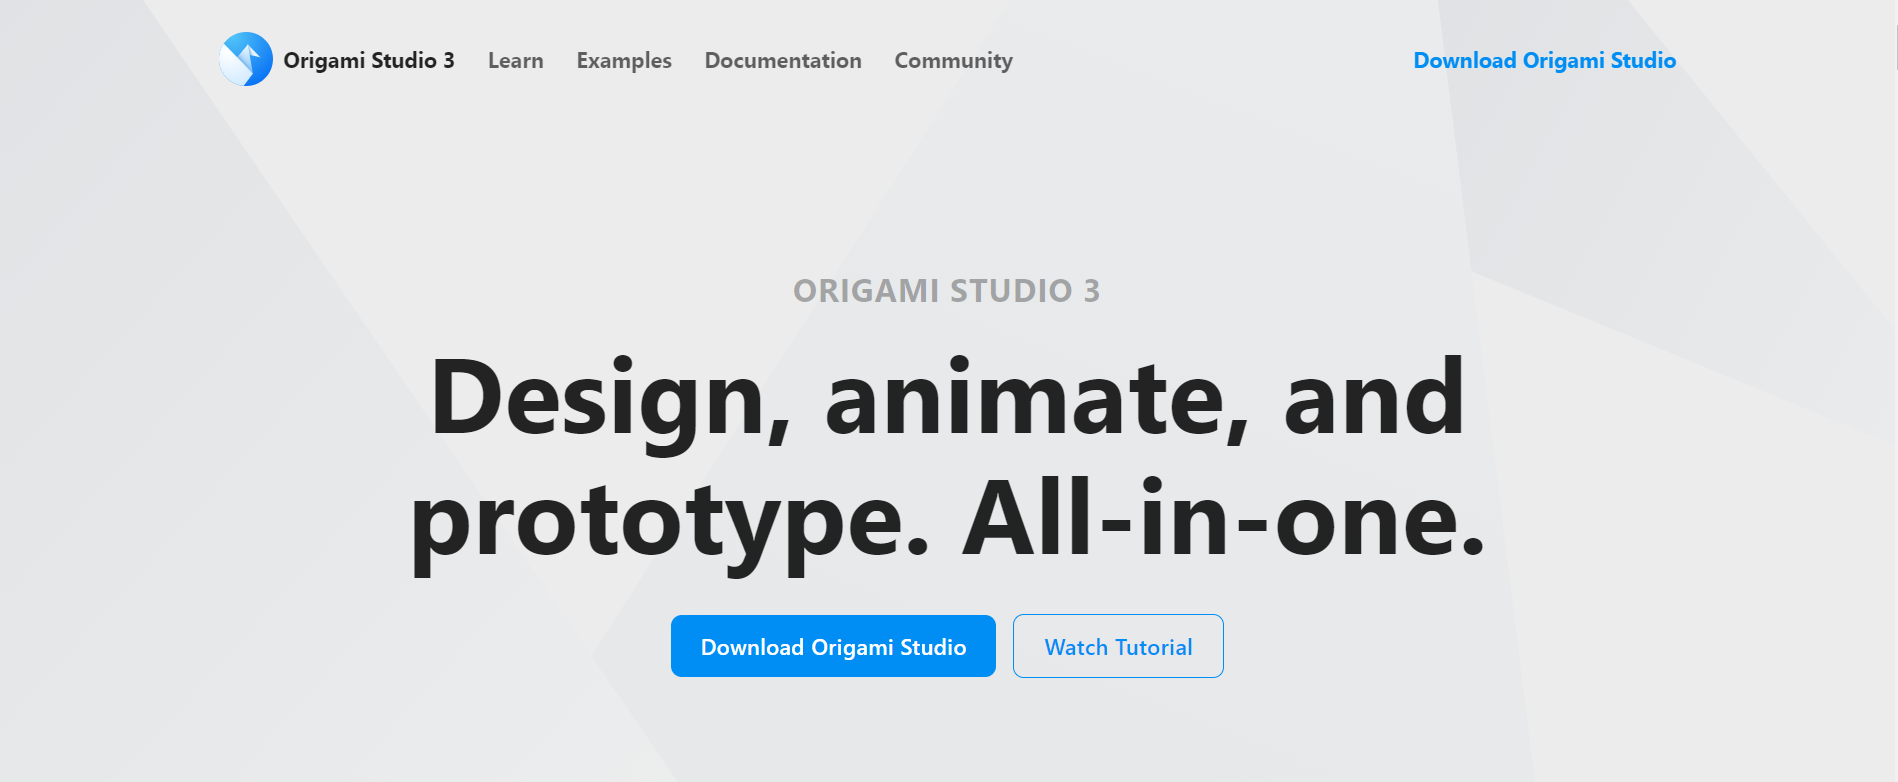 Origami-Studio--Origami-Studio-3.png